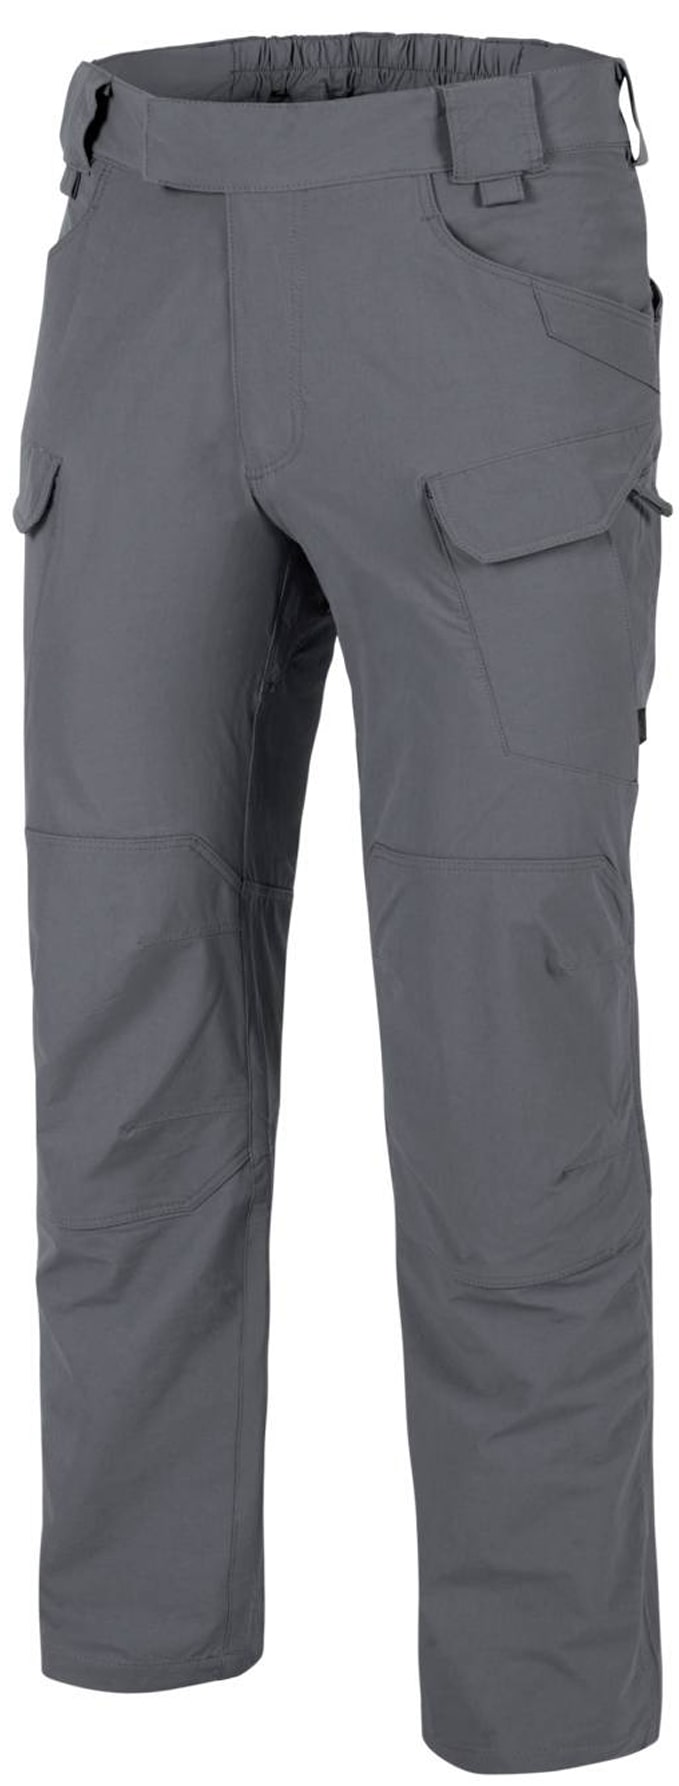 Helikon OTP pants in Grey